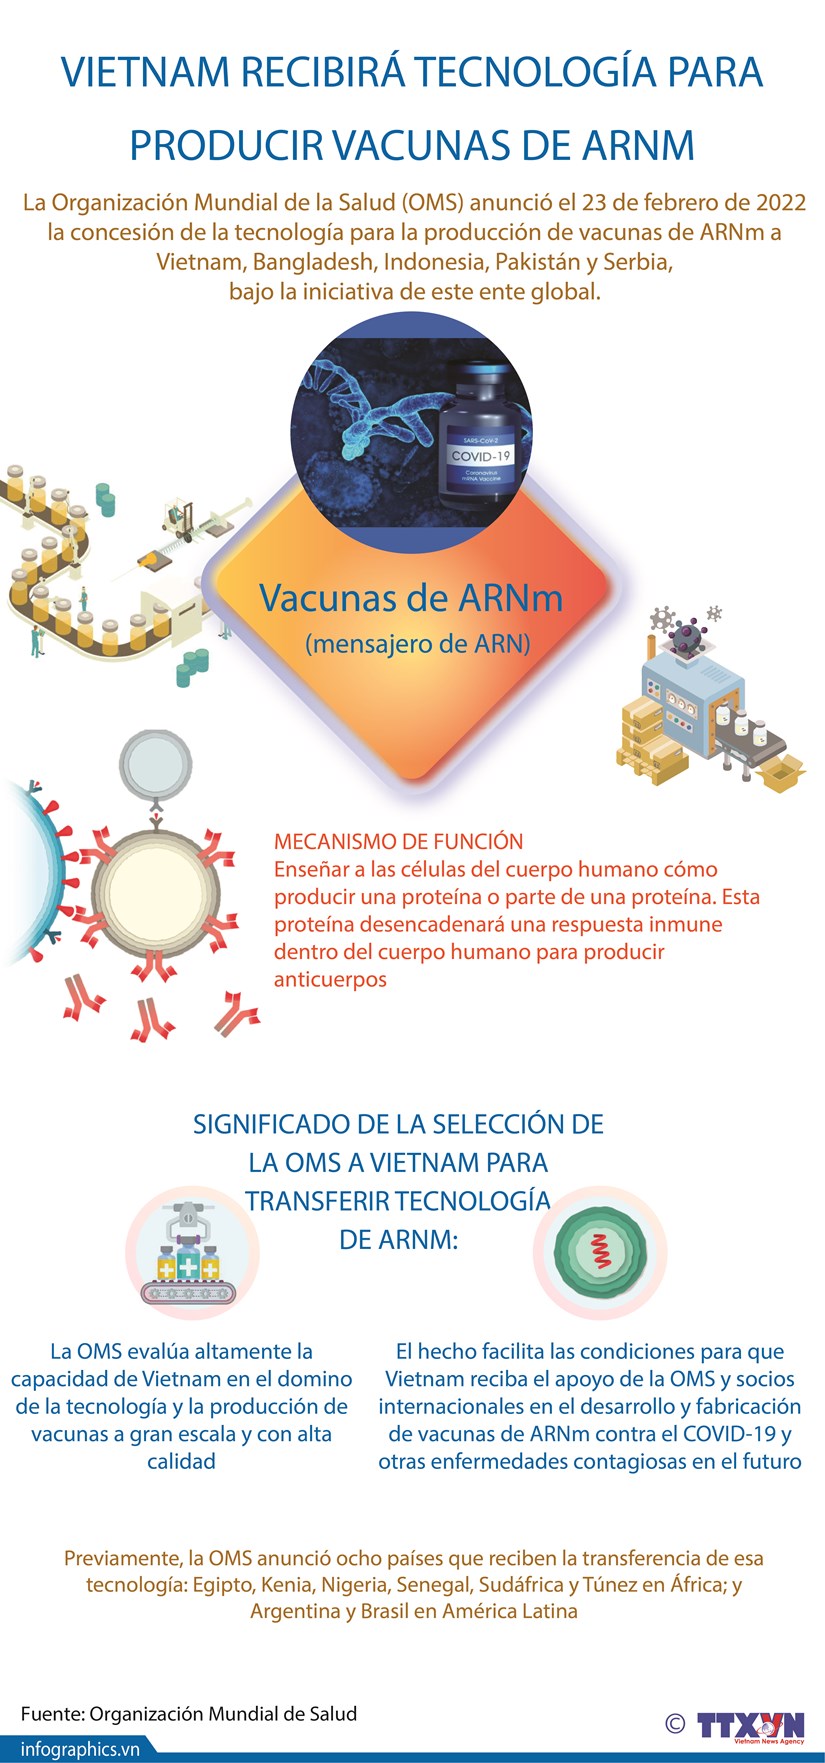 Vietnam recibira tecnologia para producir vacunas de ARNm hinh anh 1